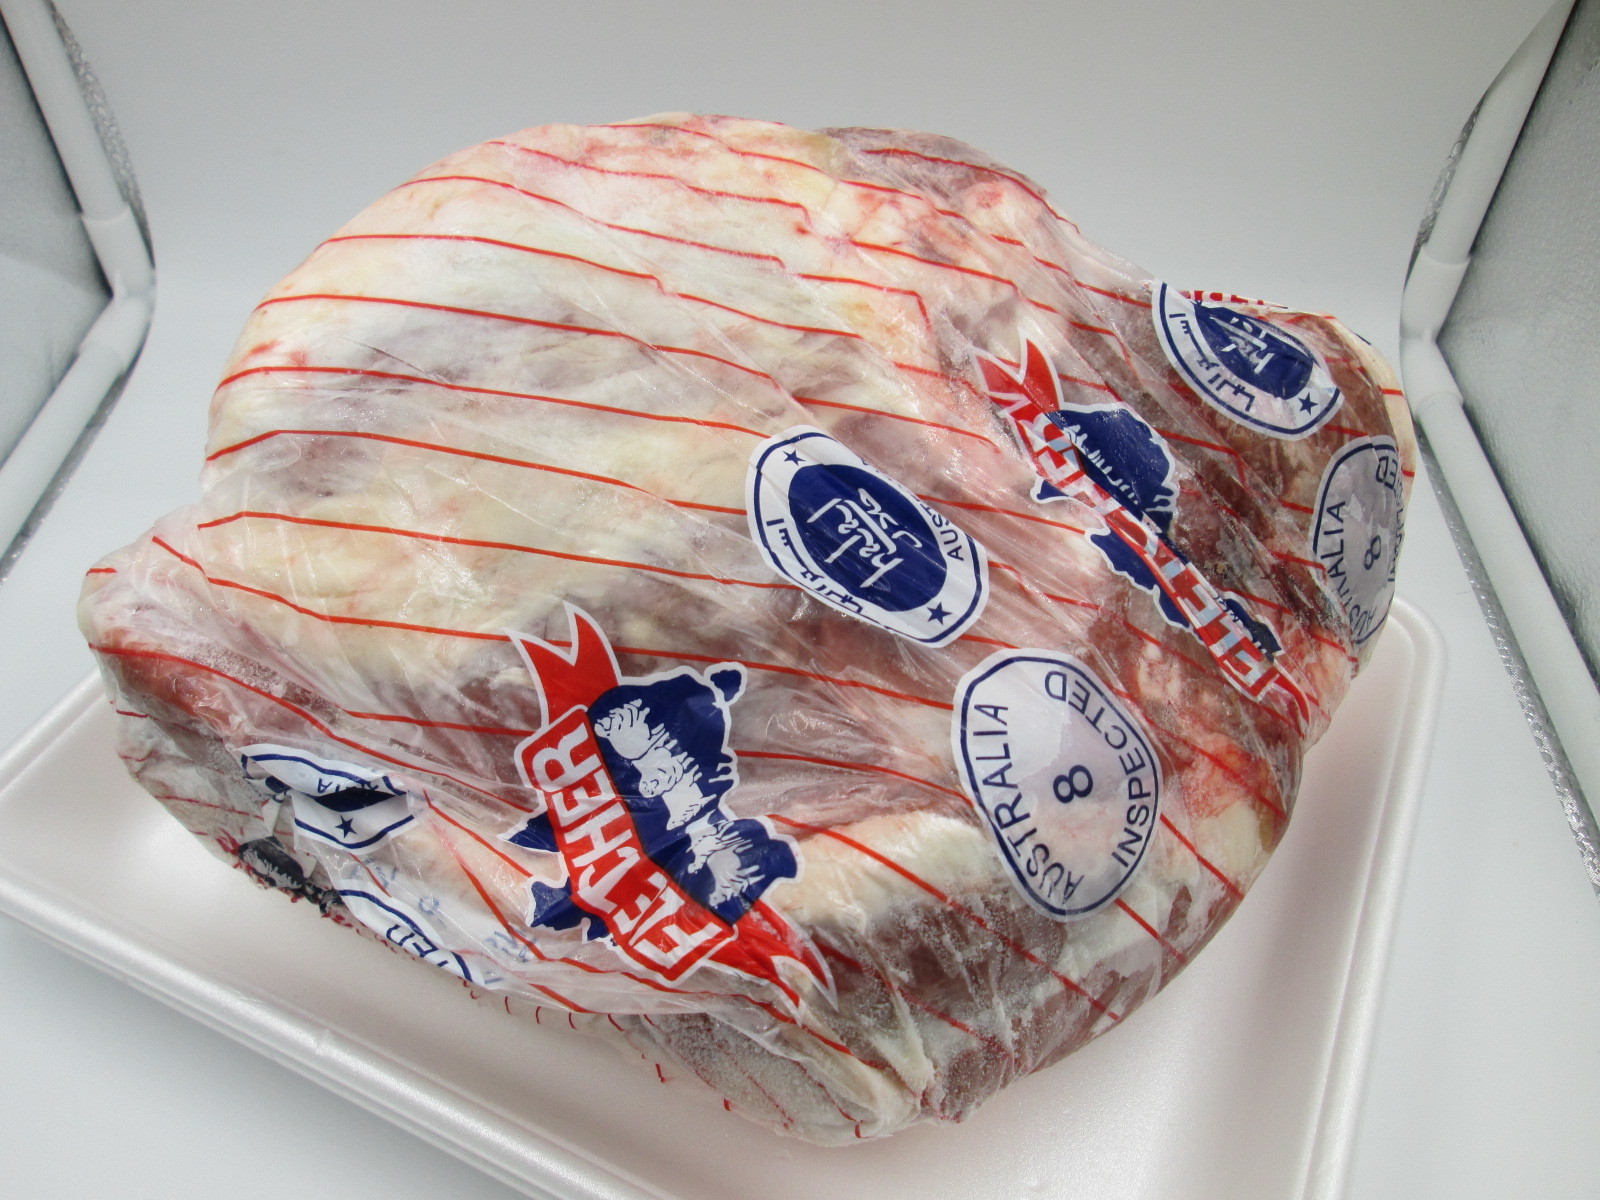 冷凍 国内外の人気 送料込 マトンレッグ 羊肉 一個約2.5kg-2.9kg